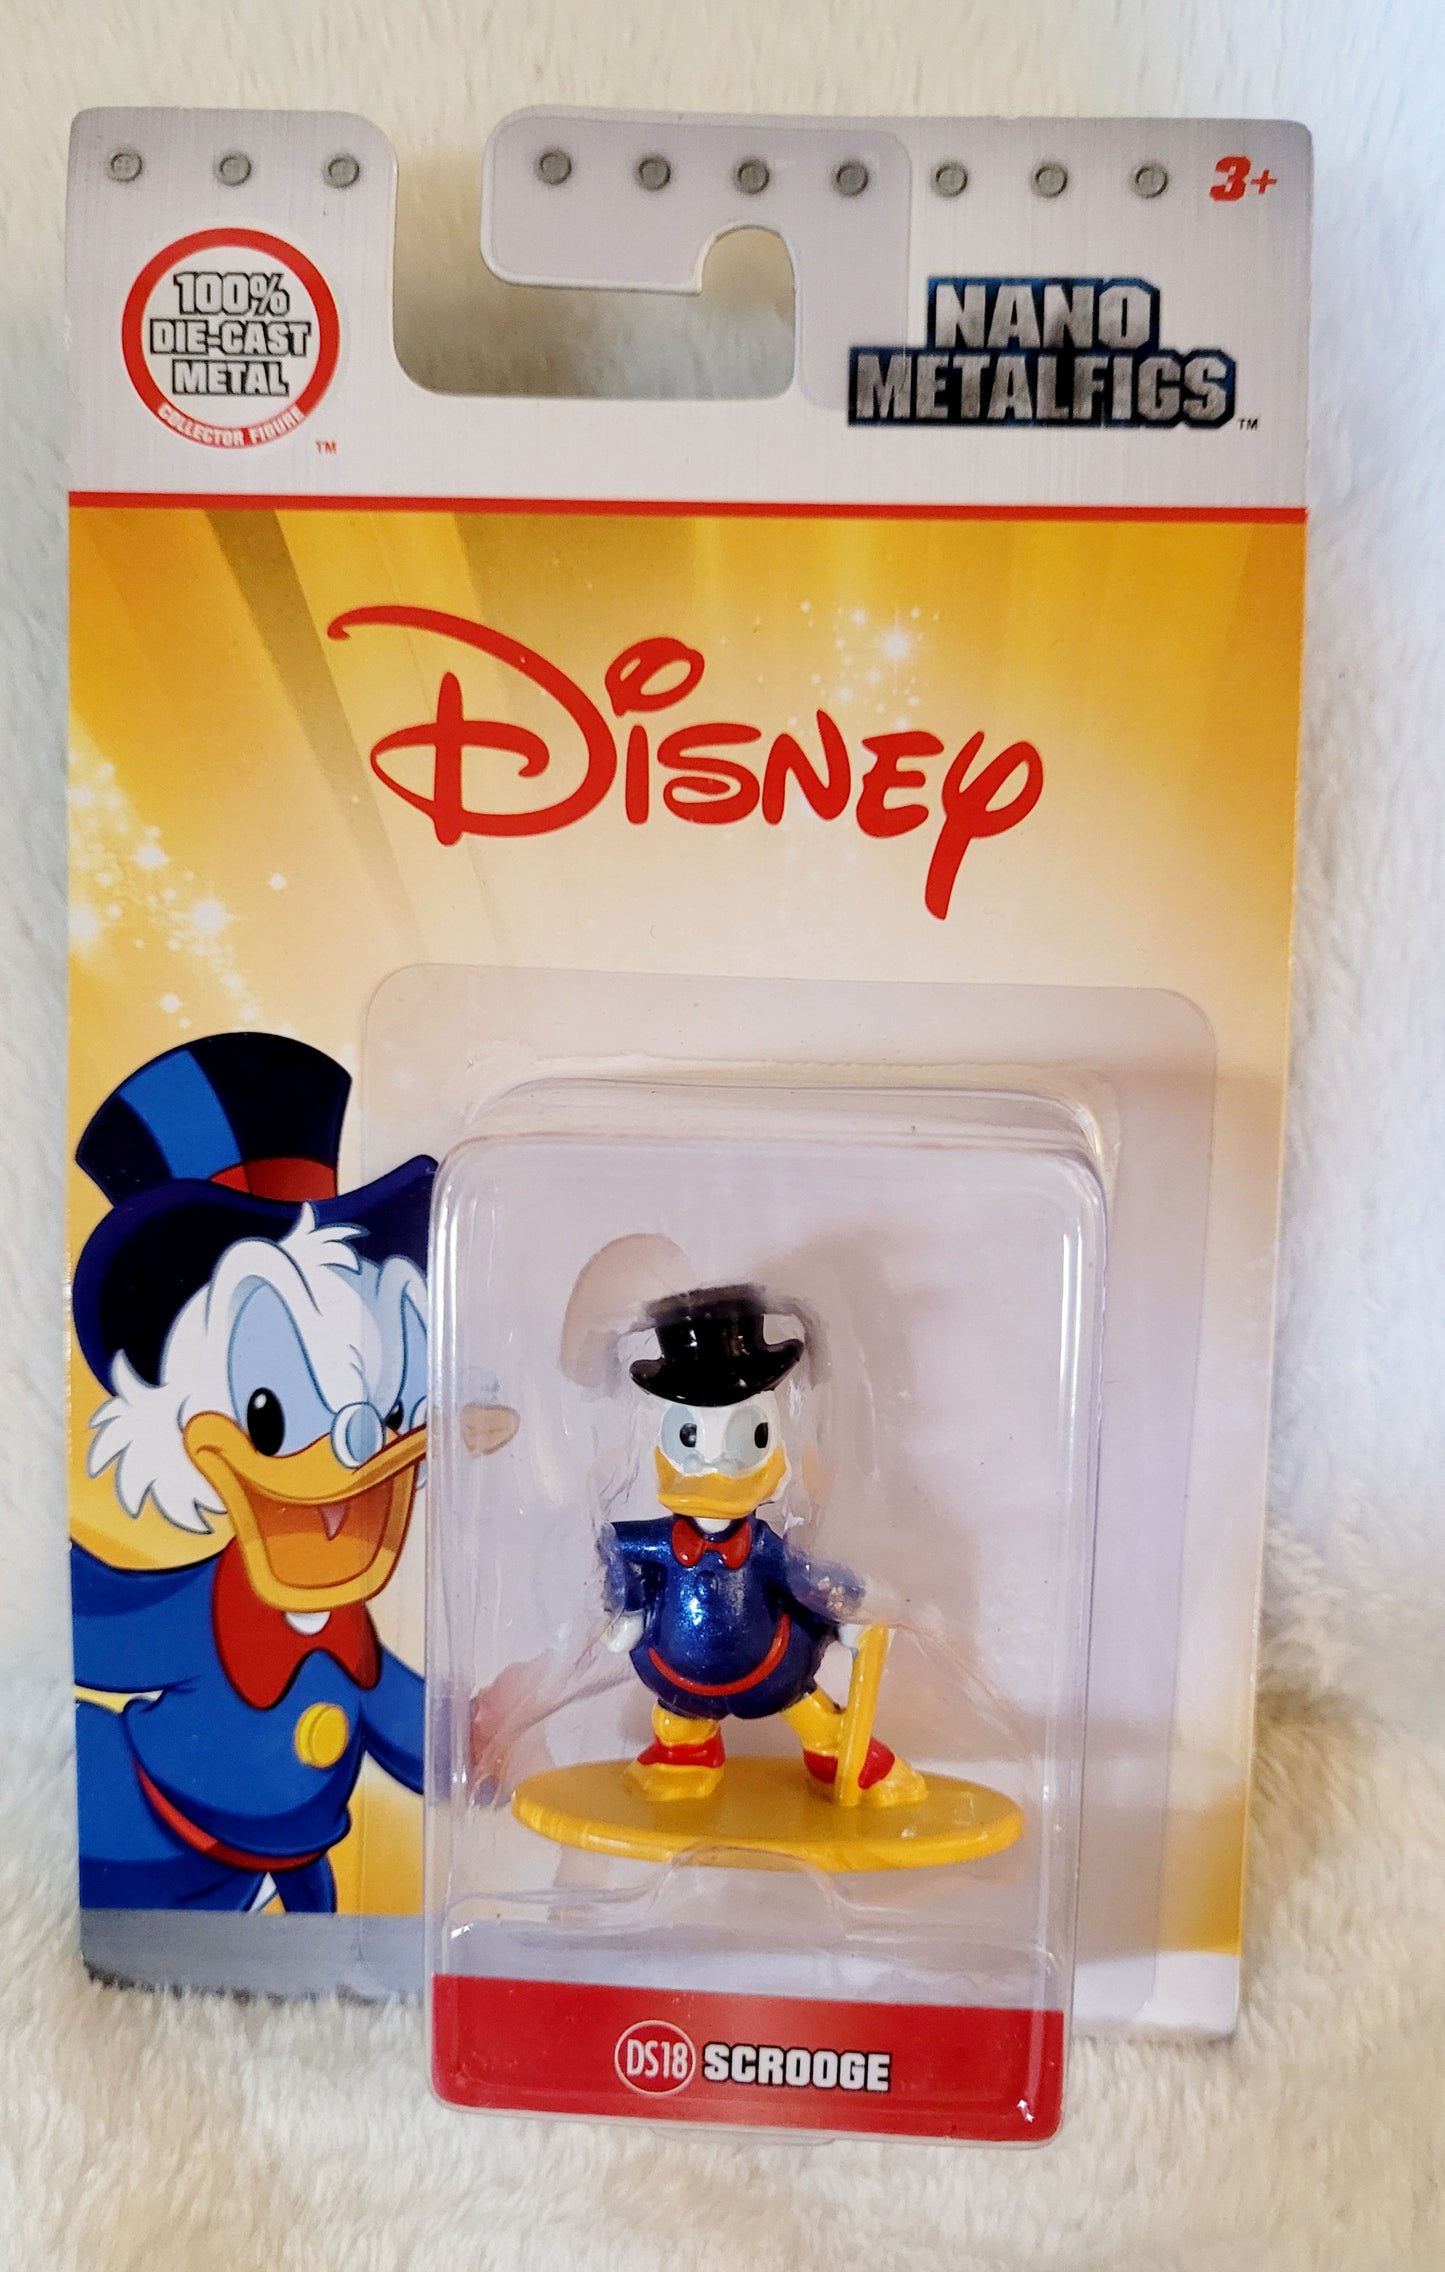 NEW *Disney Nano MetalFigs "Scrooge" Die-Cast